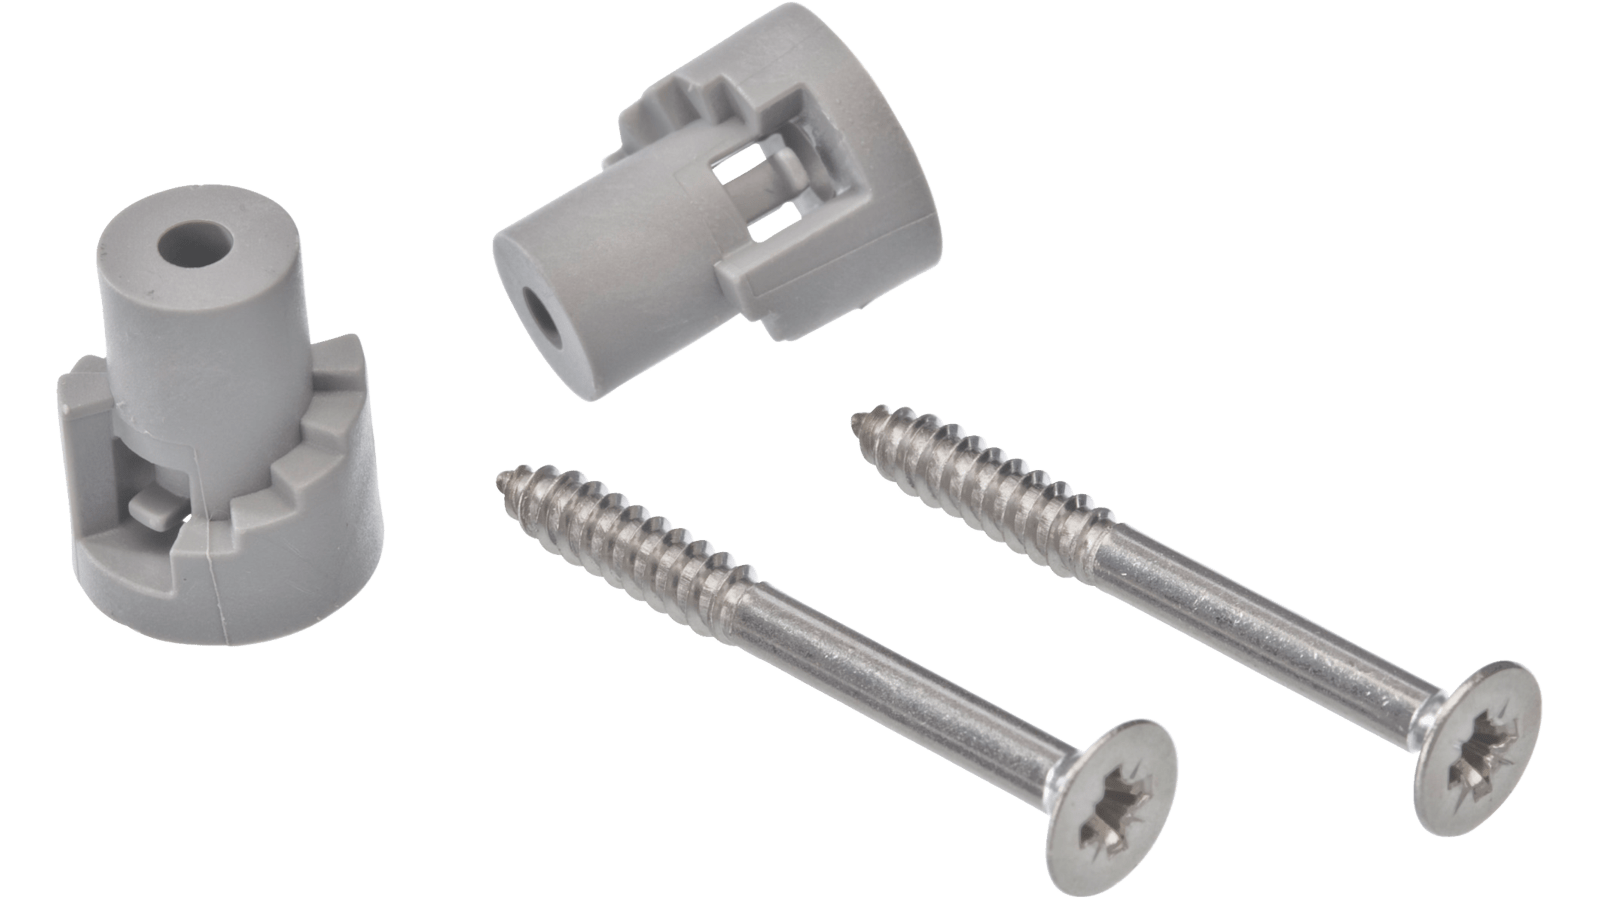 00622861 - Bosch Dishwasher Bracket Kit